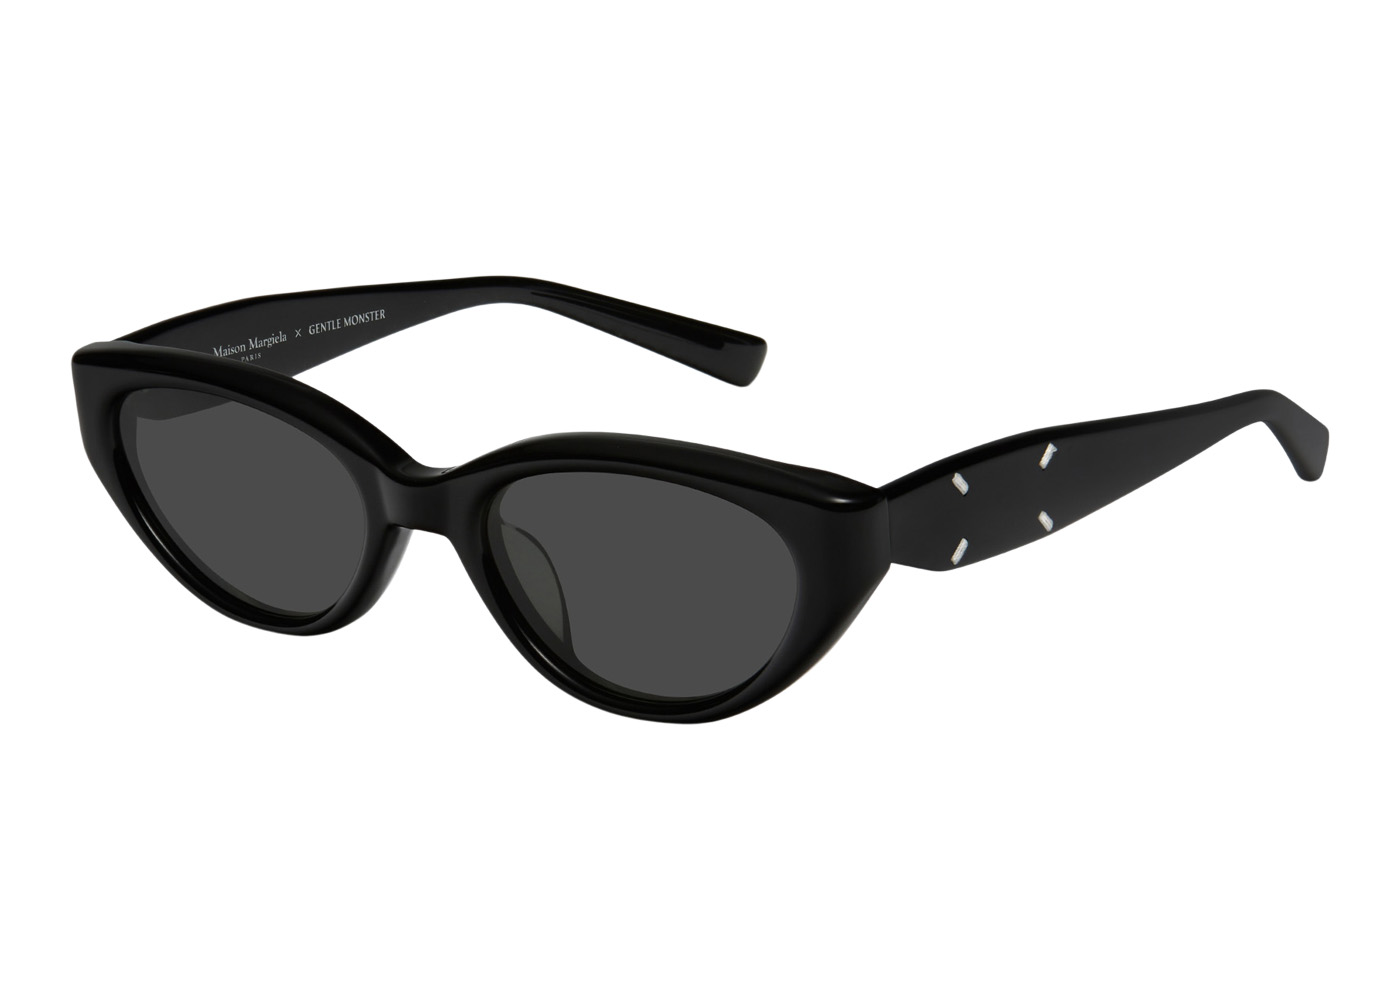 Gentle Monster Maison Margiela Aviator Sunglasses Black MM003 01 